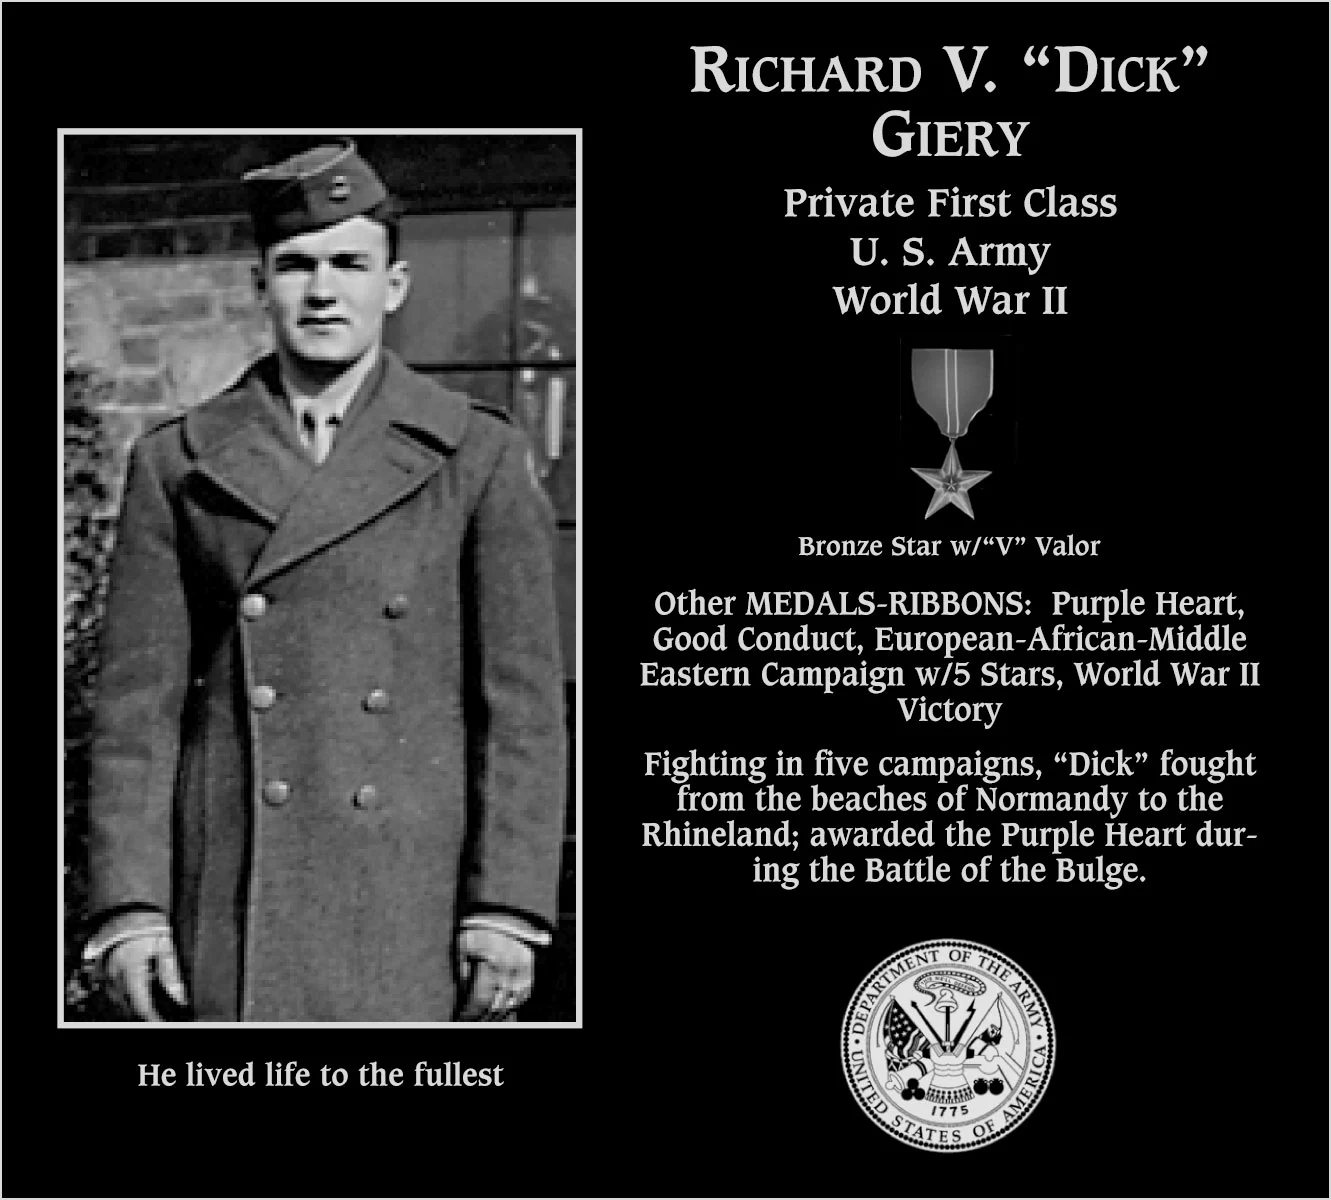 Richard V. “Dick” Giery